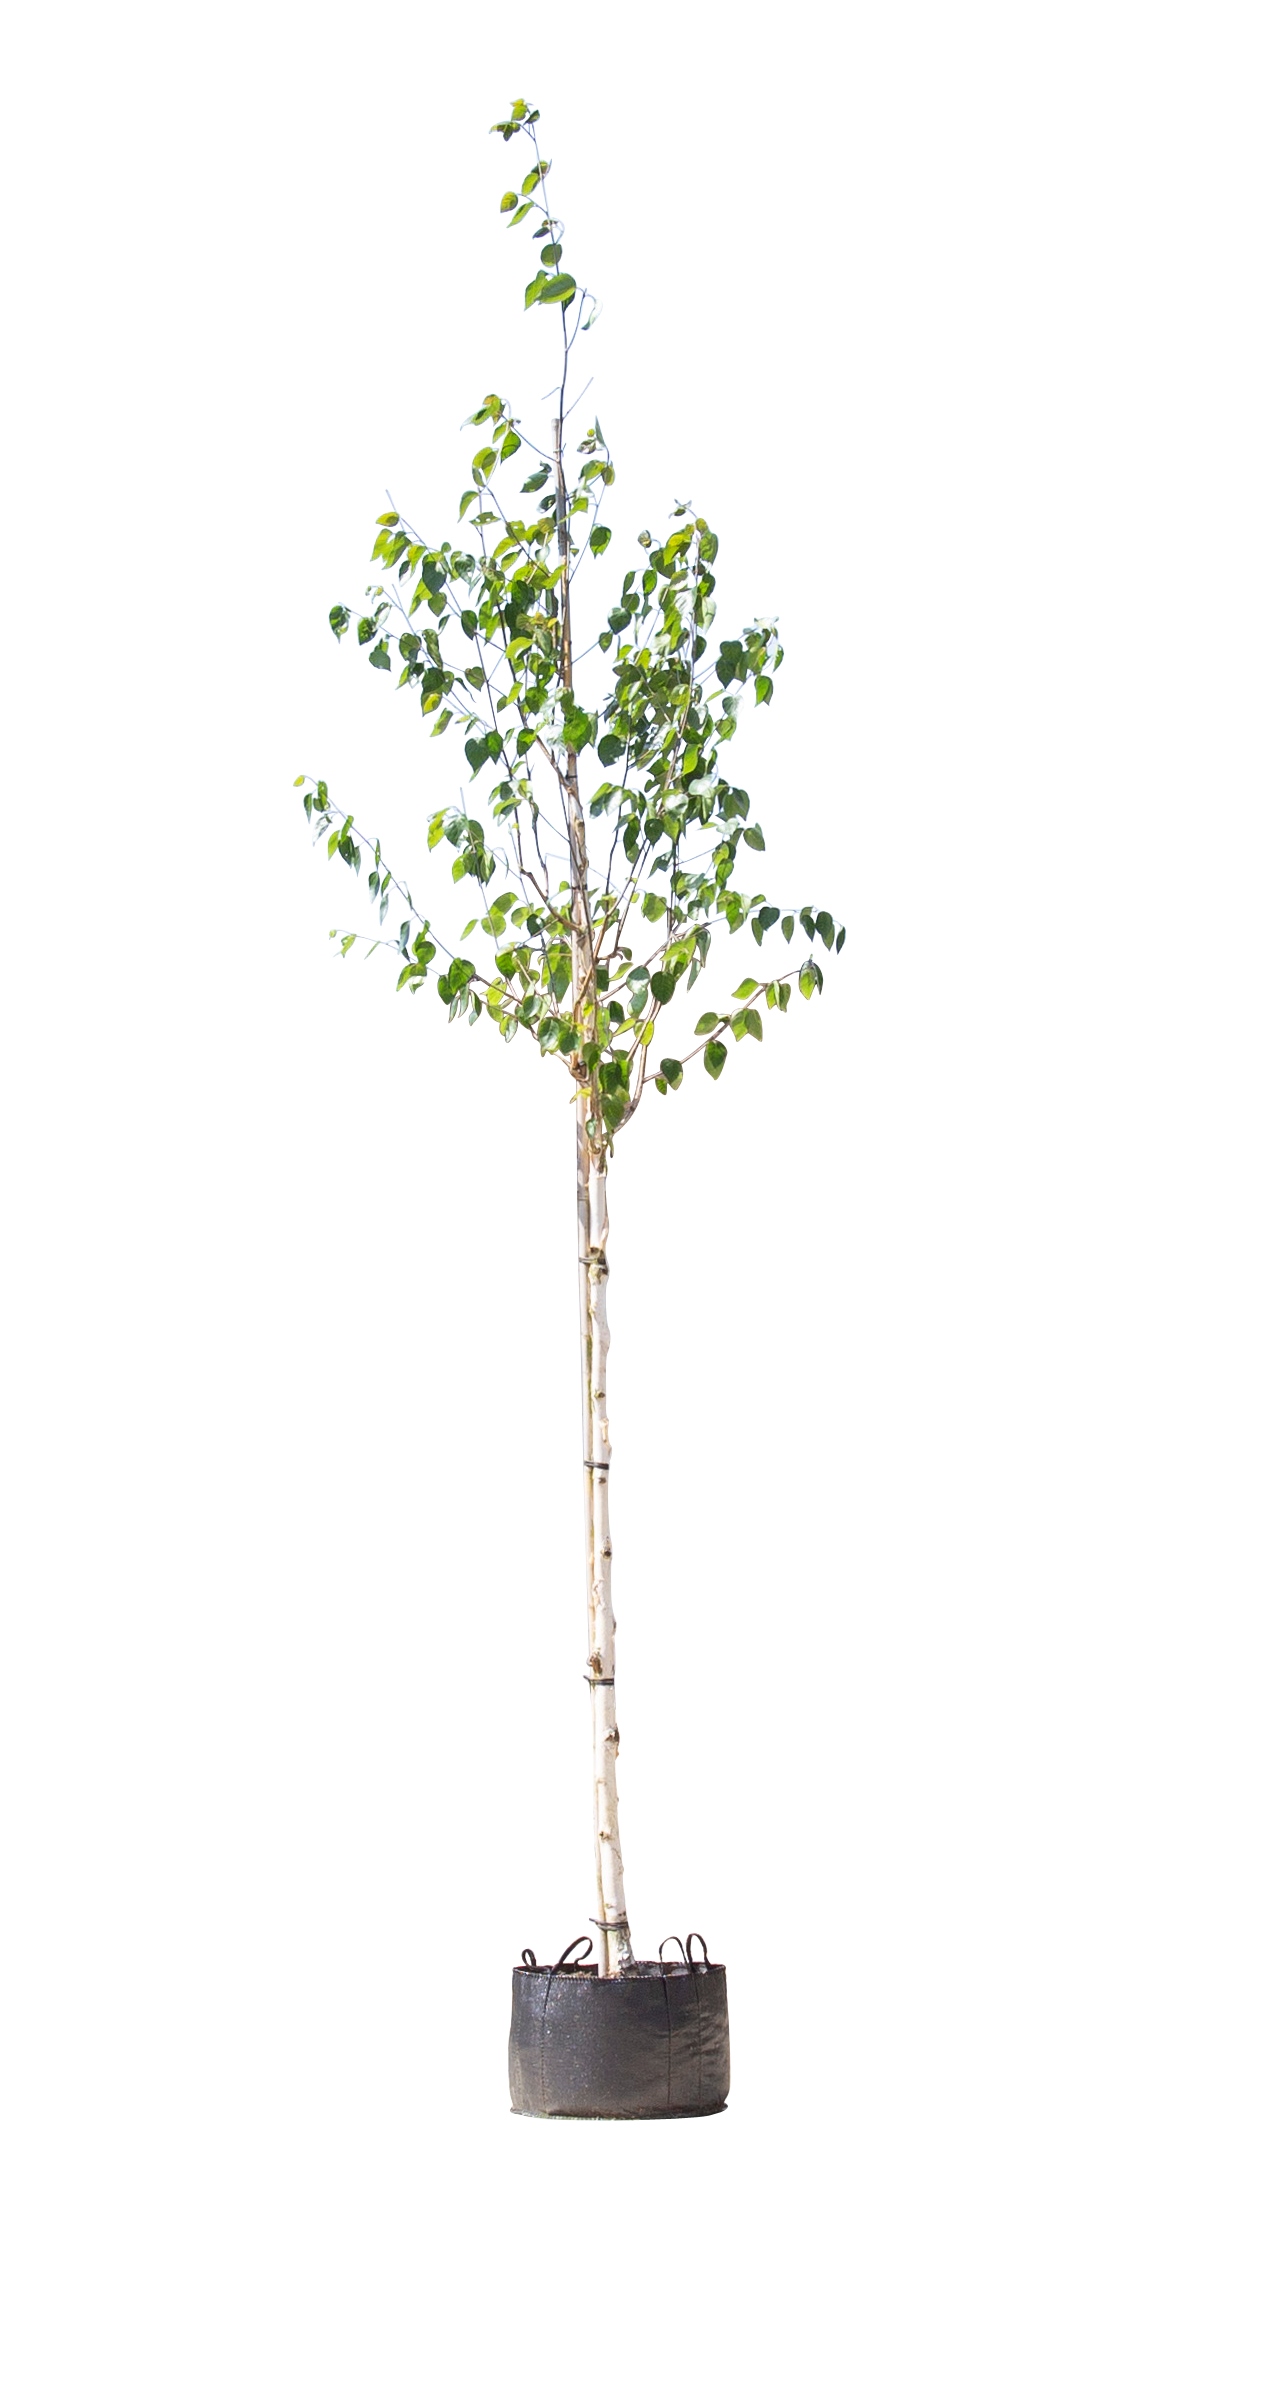 Witte himalaya berk Betula ut. jacquemontii h 350 cm st. omtrek 12 cm - Warentuin Natuurlijk